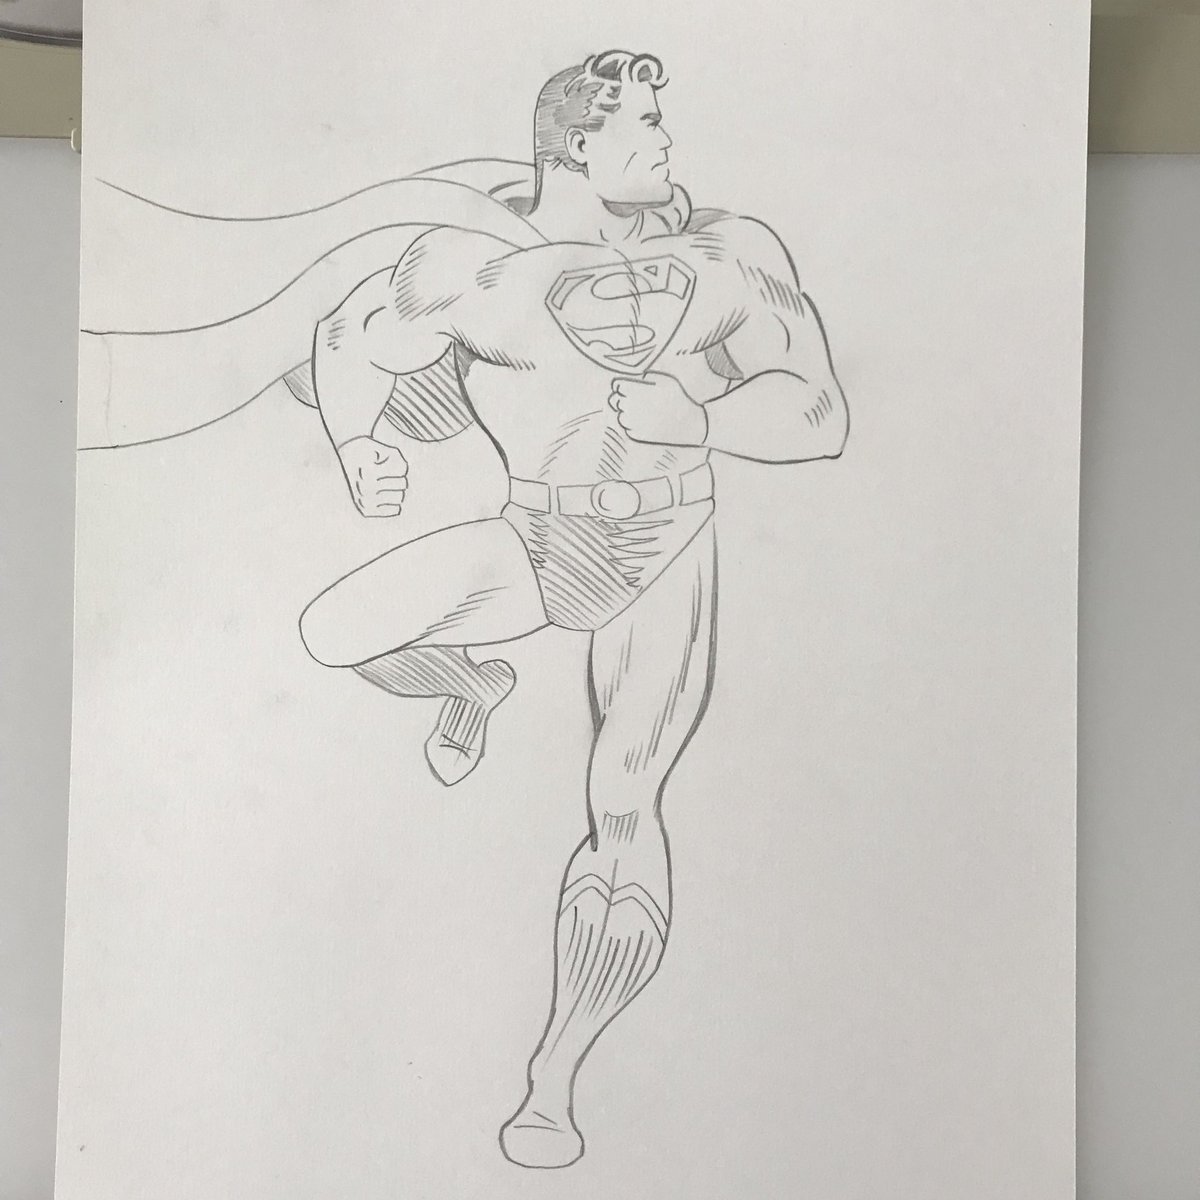 Superman pencils #manofsteel #superman #joeshuster #goldenage #goldenagesuperman #dccomics #pencils #ticonderoga #ticonderogapencils